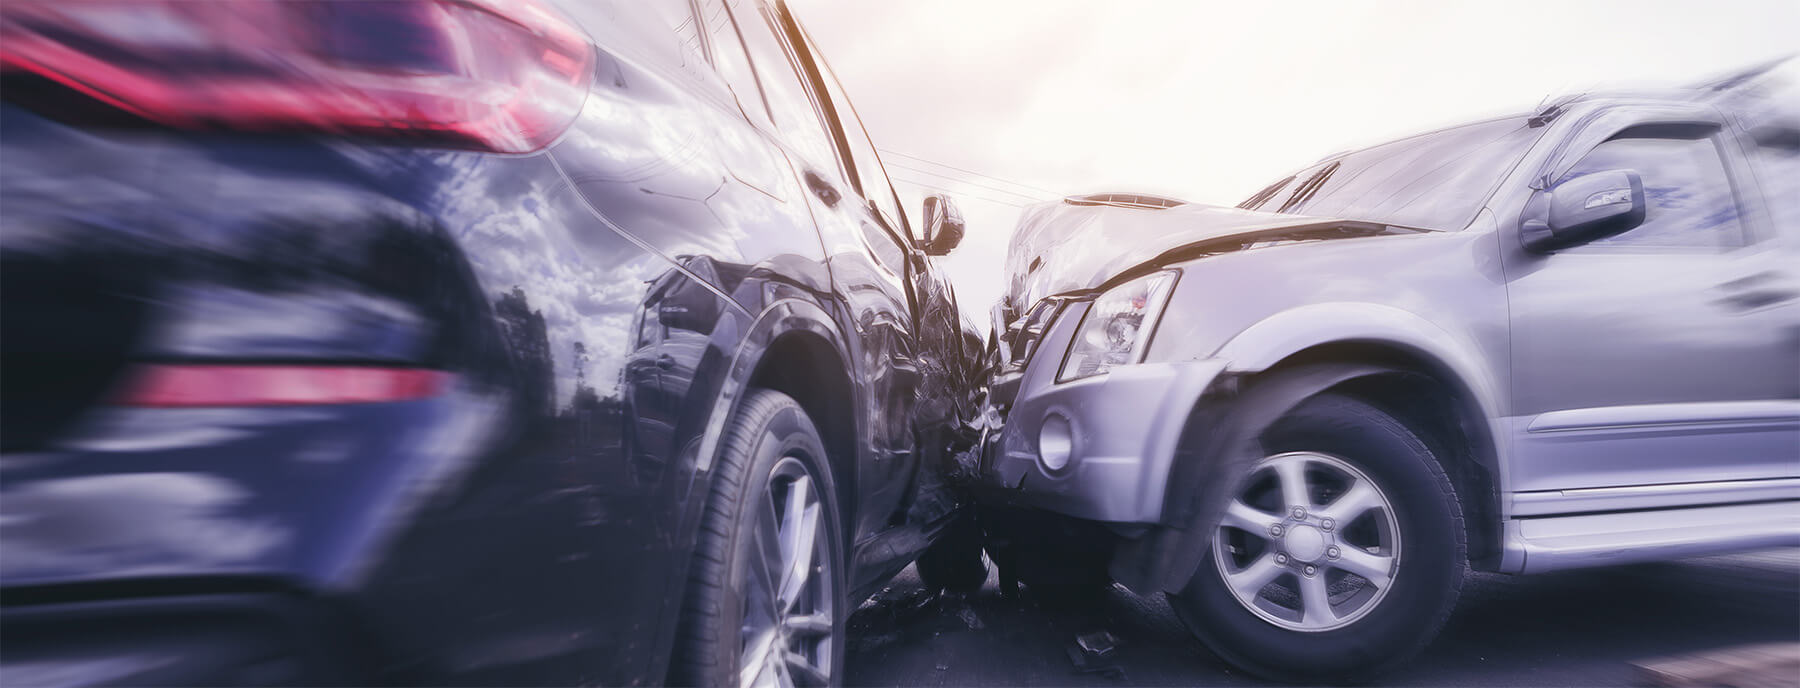 Accidentes por conducción en estado de ebriedad/DUI